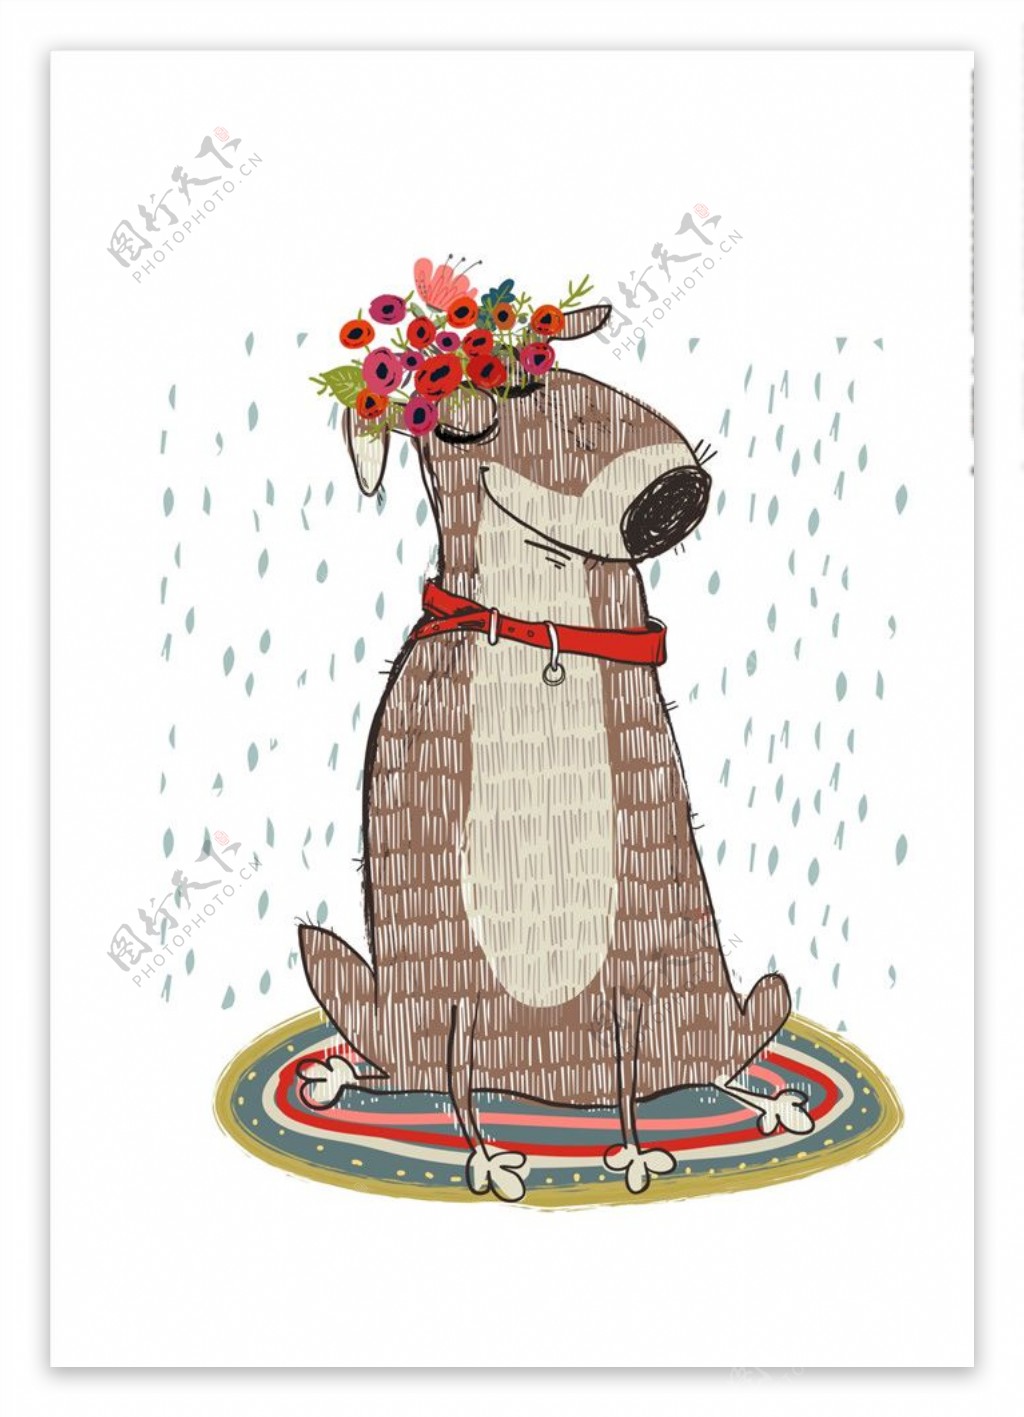 与在空白背景查出的玫瑰的奇瓦瓦狗狗 库存图片. 图片 包括有 看板卡, 花卉, 宠物, 弗洛斯, 祝贺, 礼品 - 80191733